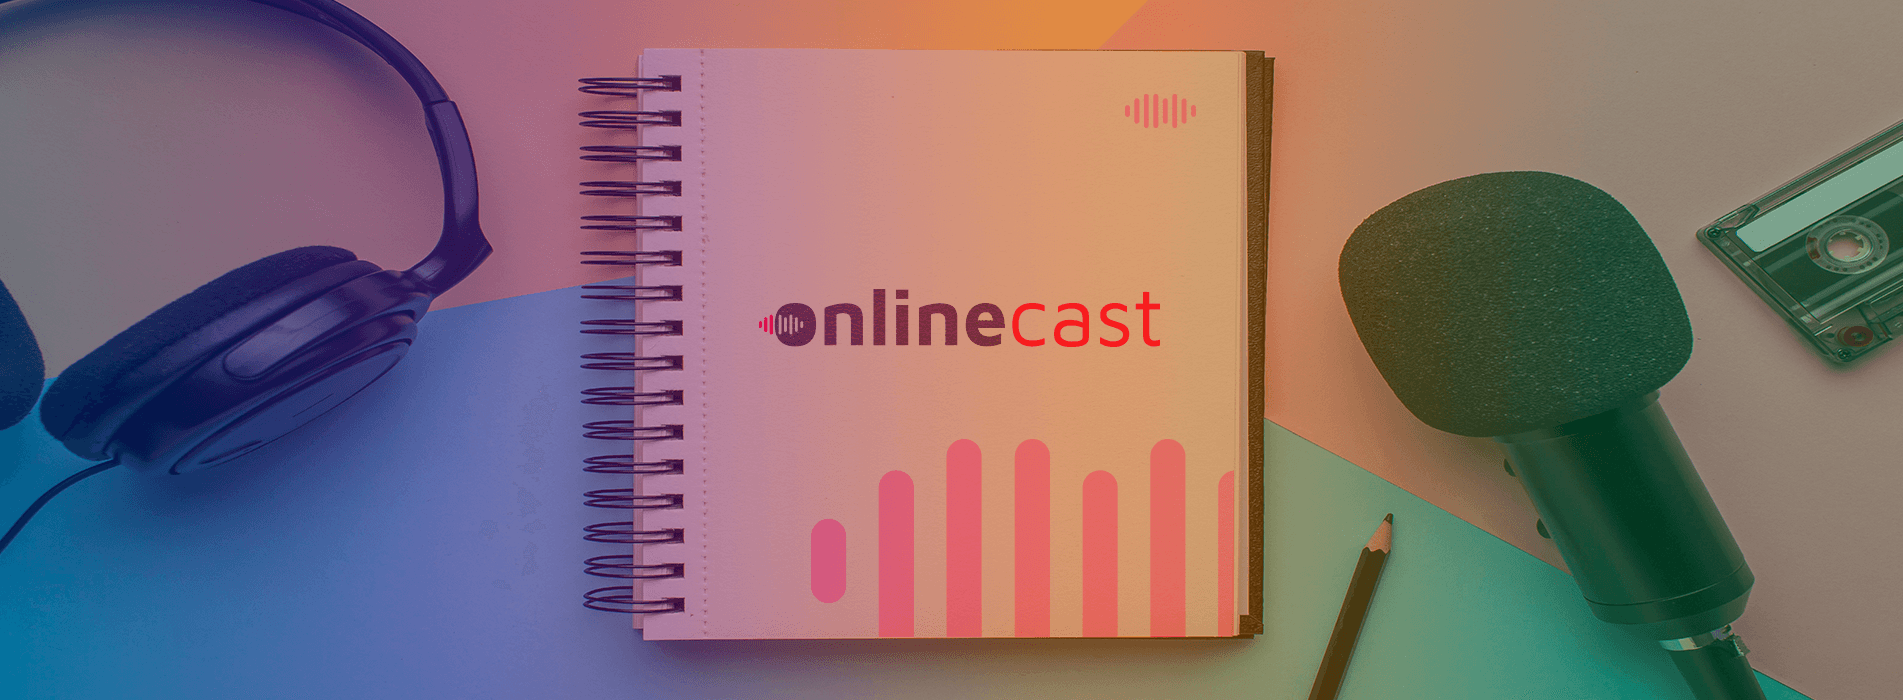 OnlineCast: o seu podcast sobre marketplaces!